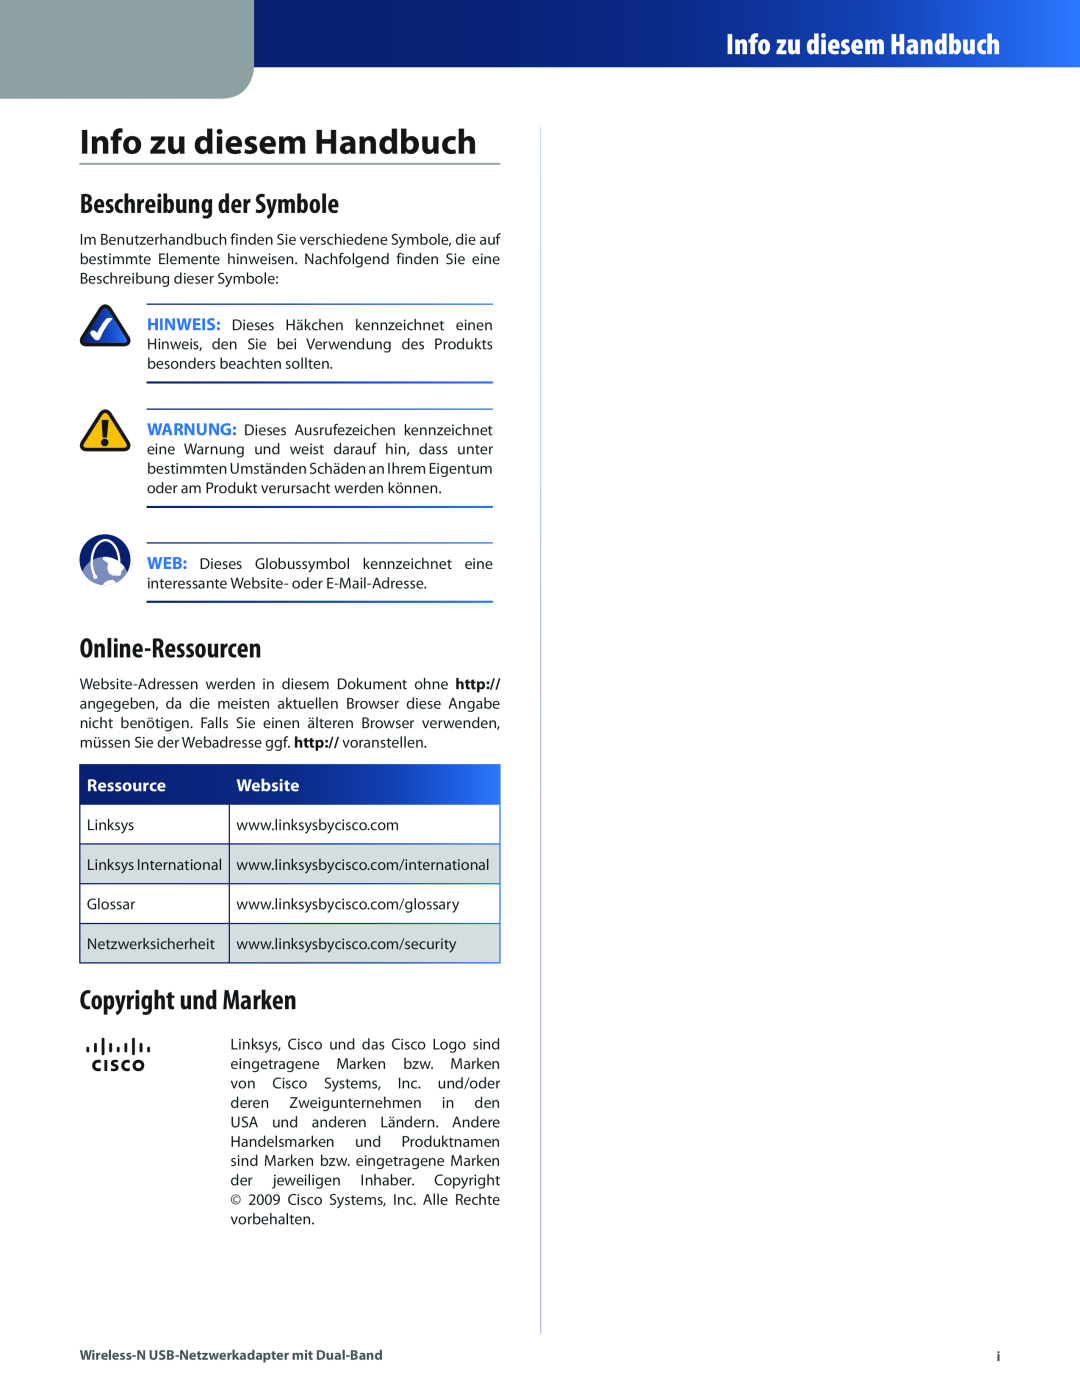 Cisco Systems WUSB600N Info zu diesem Handbuch, Beschreibung der Symbole, Online-Ressourcen, Copyright und Marken, Website 